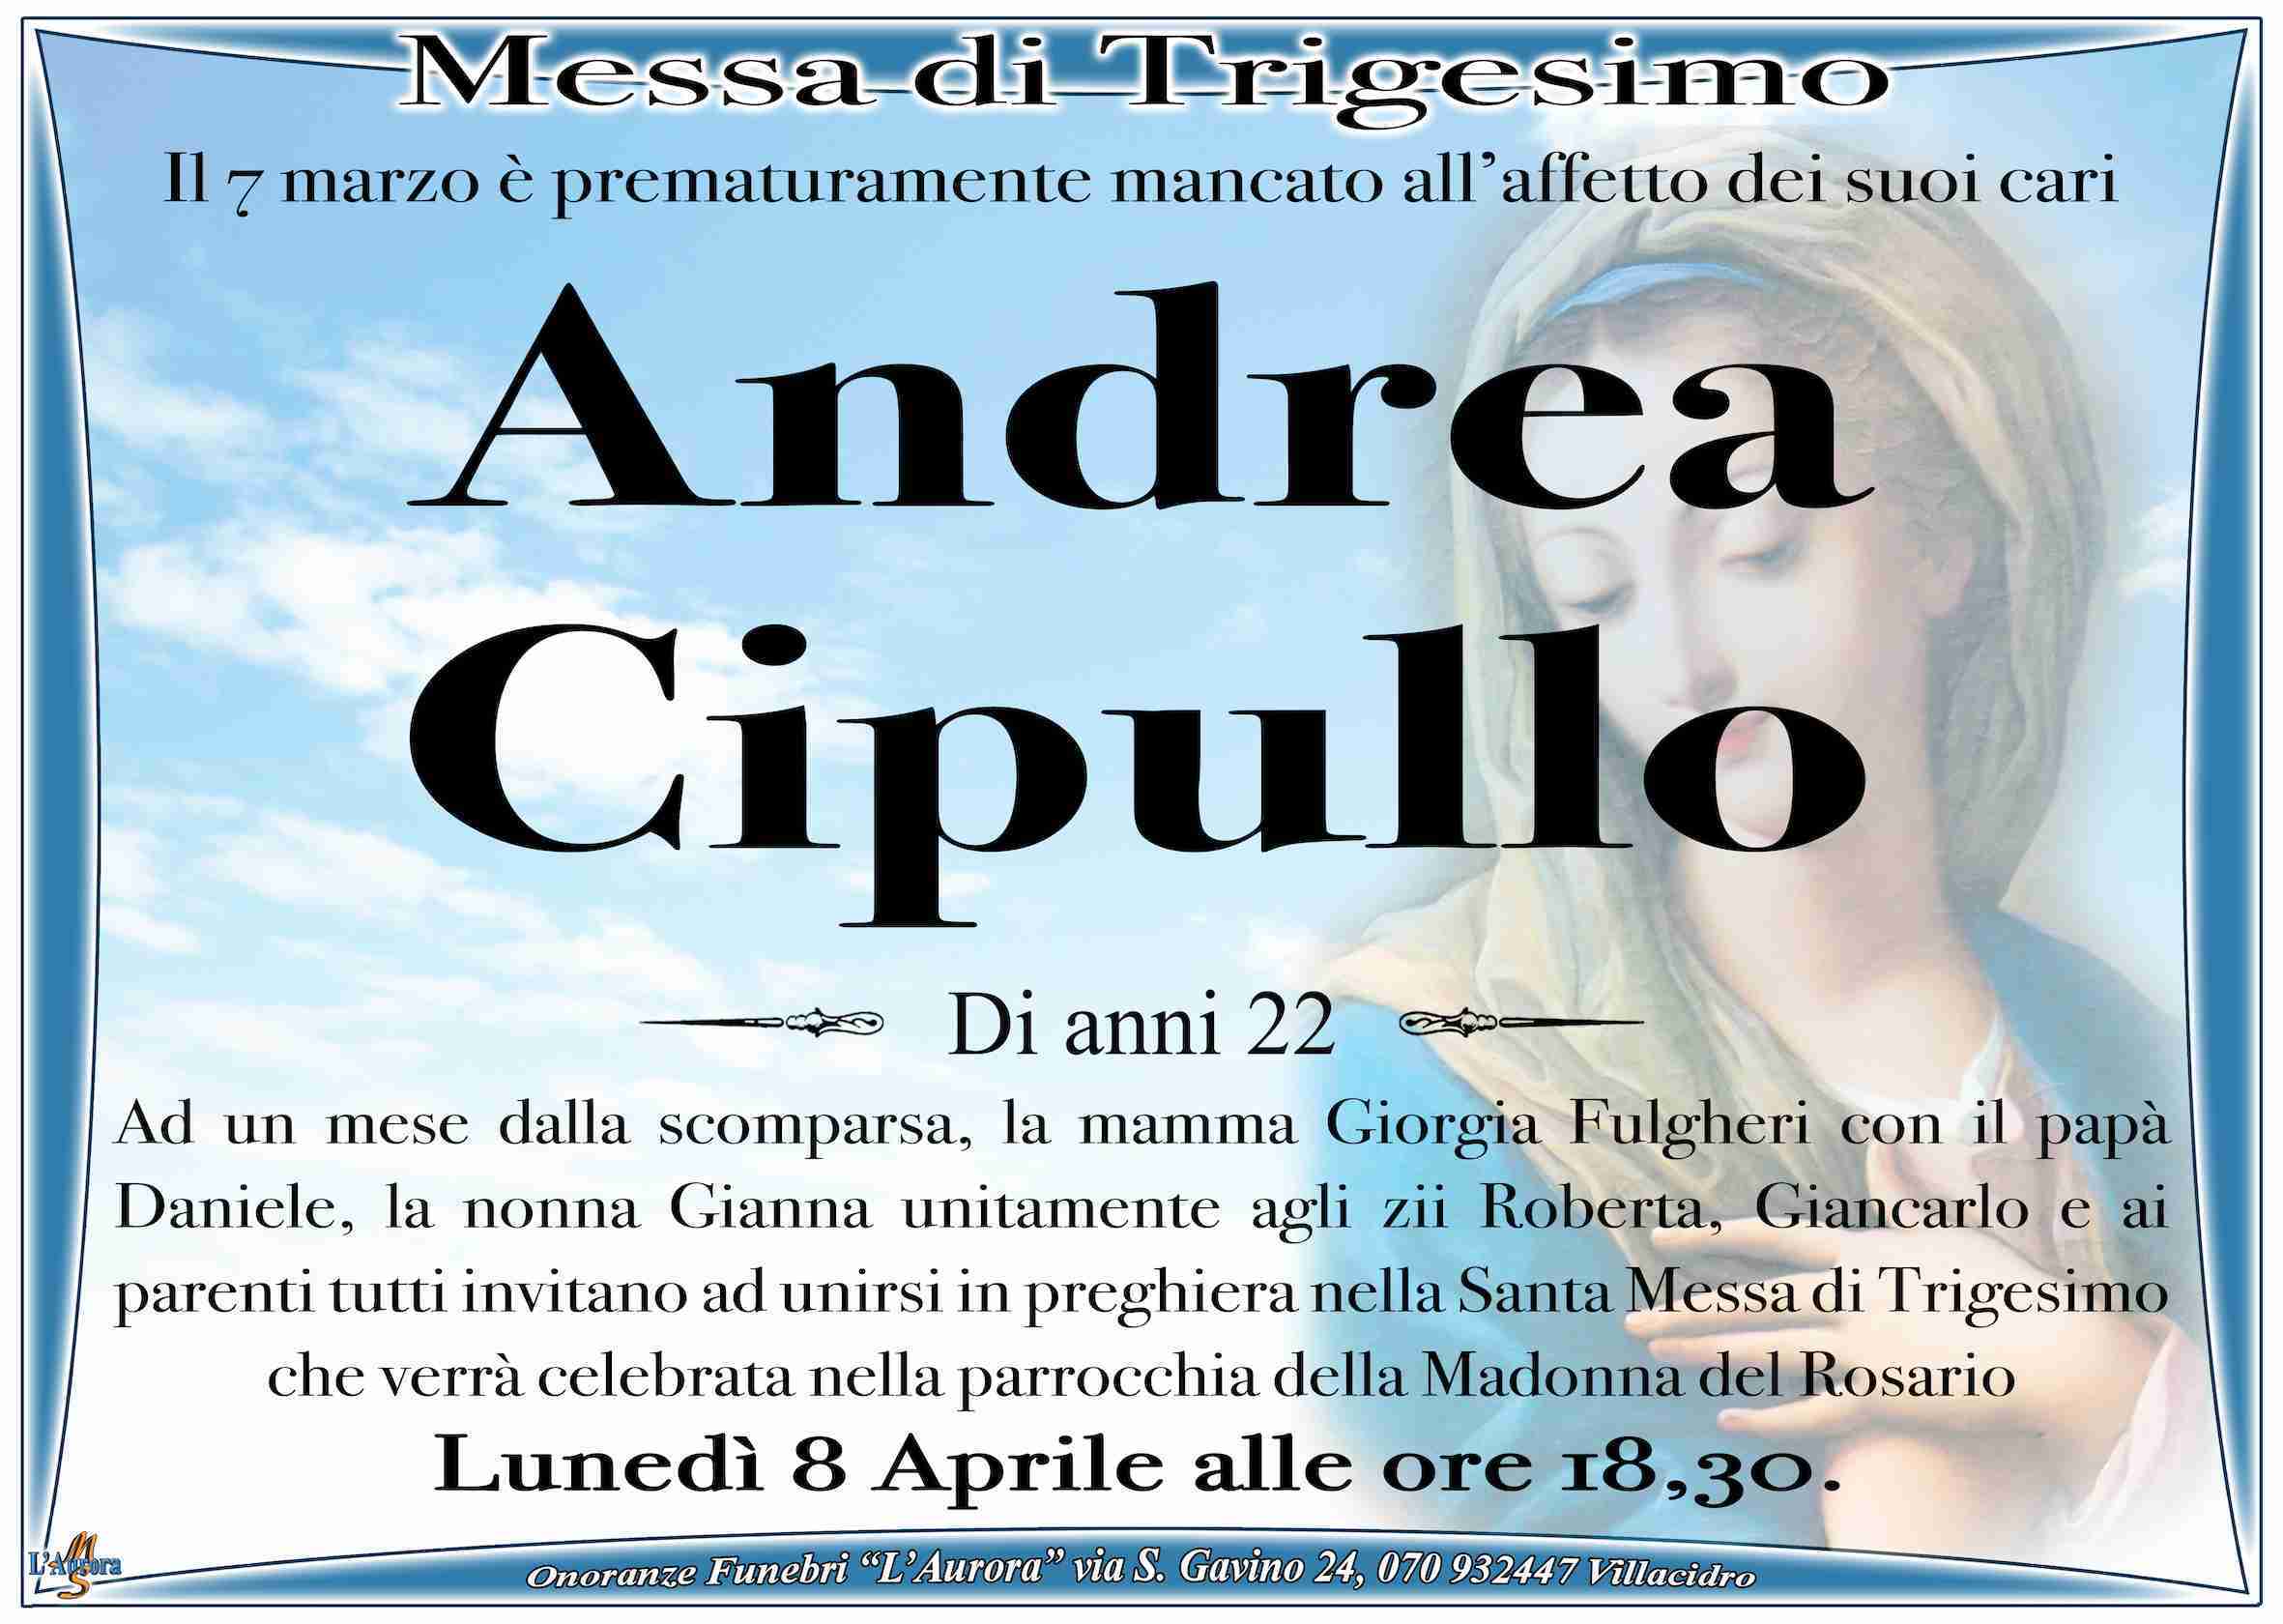 Andrea Cipullo